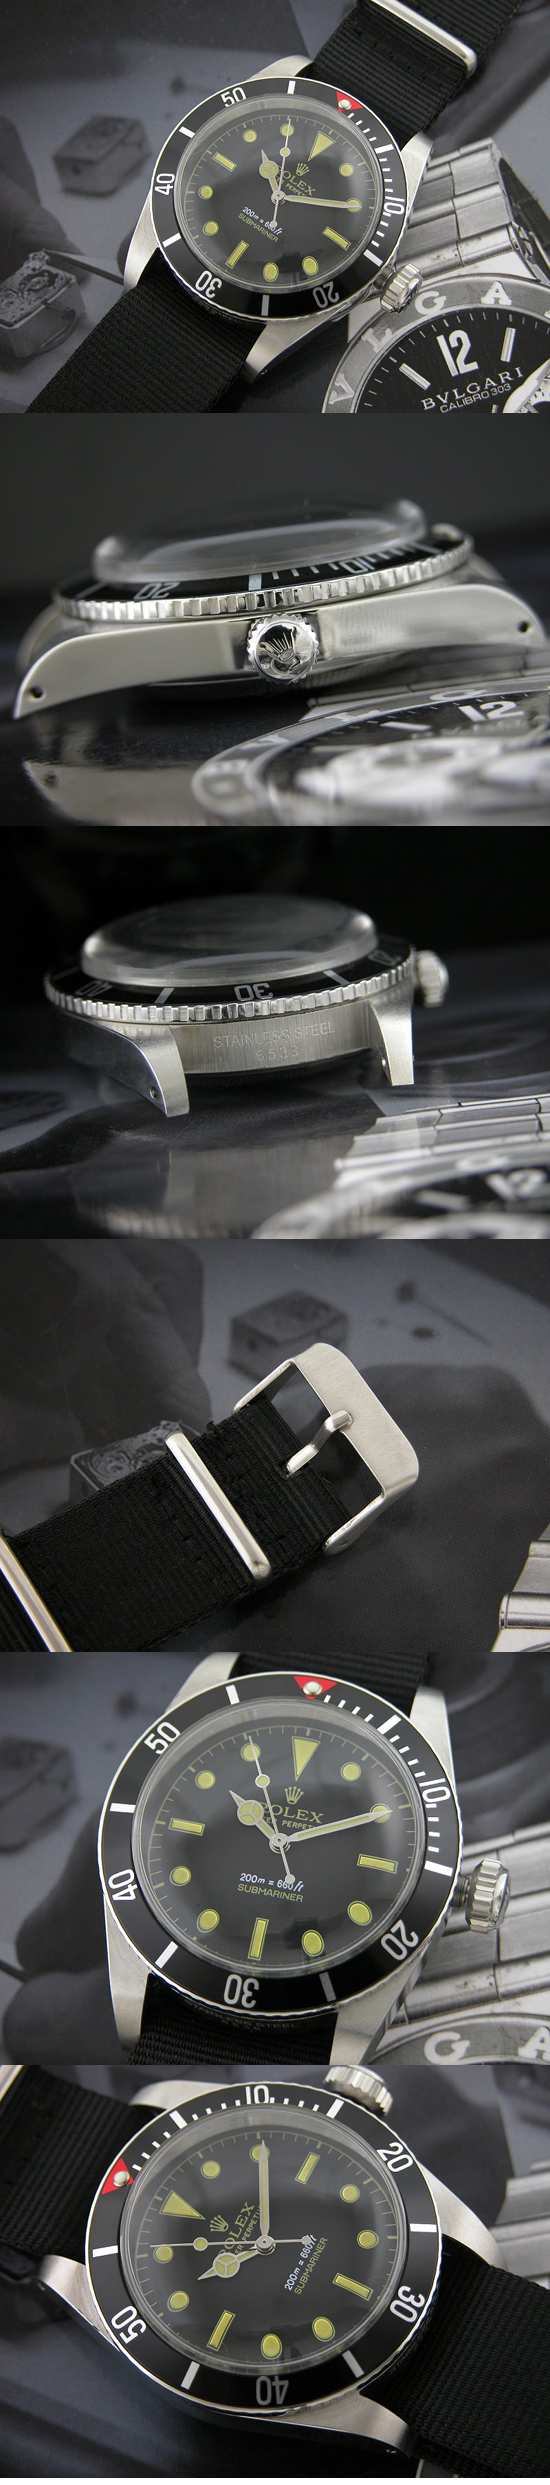 おしゃれなブランド時計がロレックス-サブマリーナ-ROLEX-16610-35-男性用を提供します.